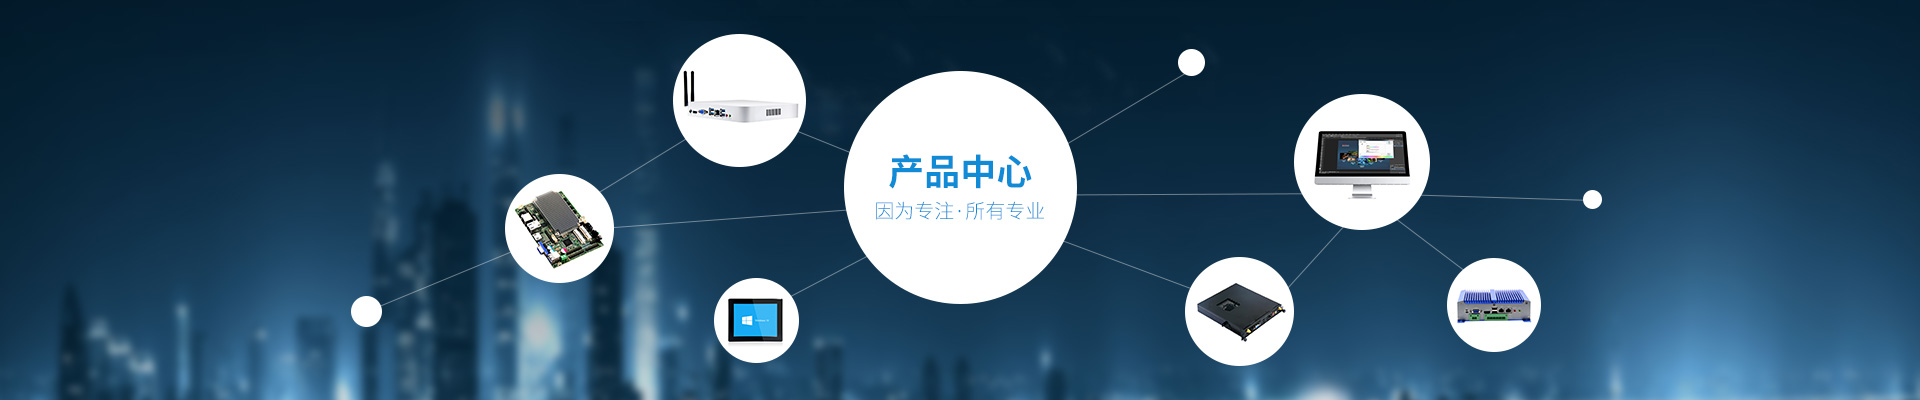 深圳市諄勤智能科技有限公司